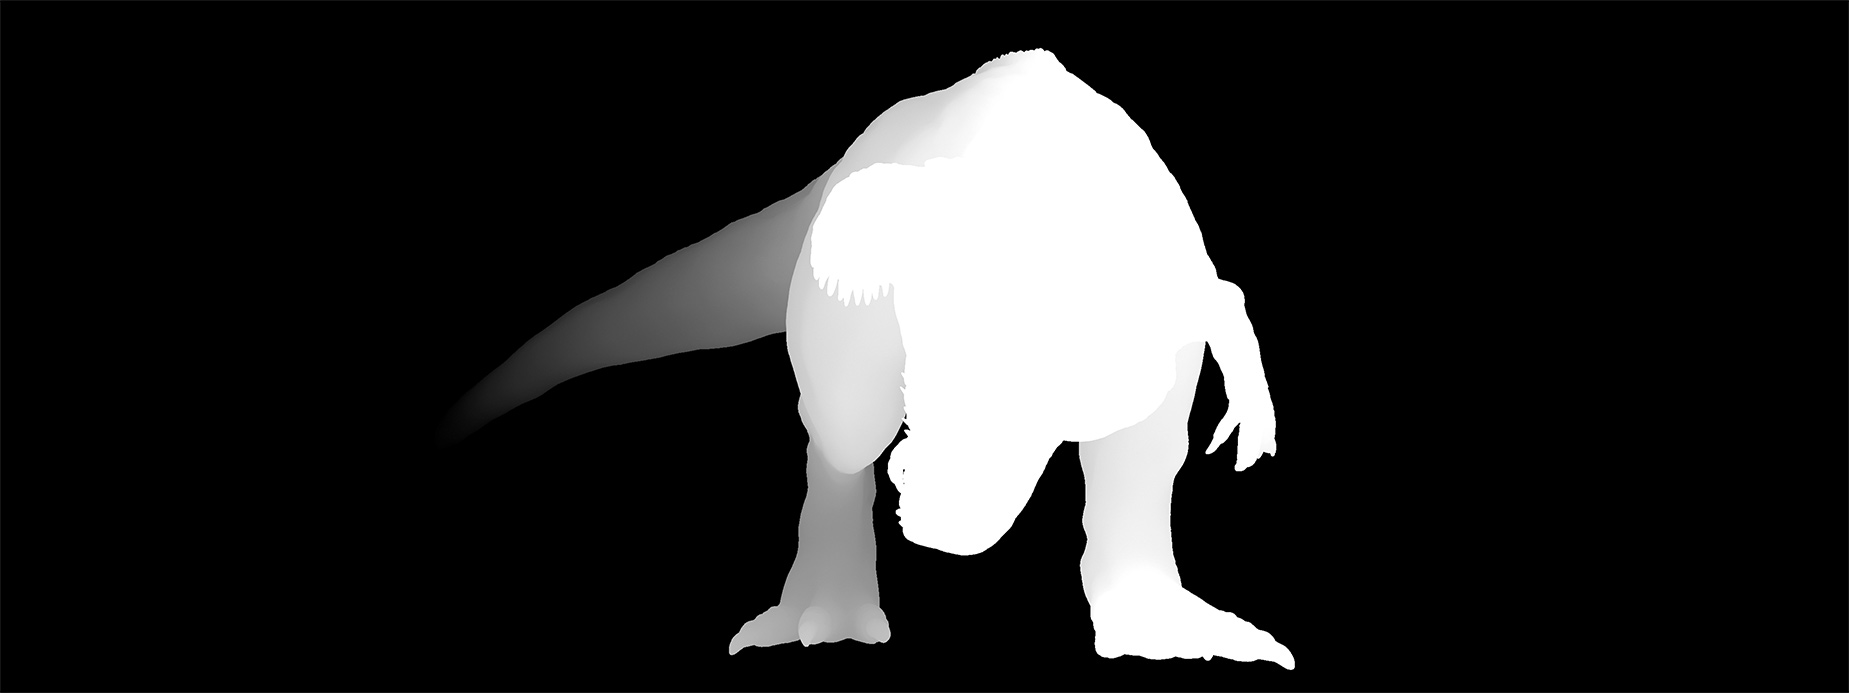 Jurassic メイキング解説 Zbrushの小技やイラスト制作について呟くブログ